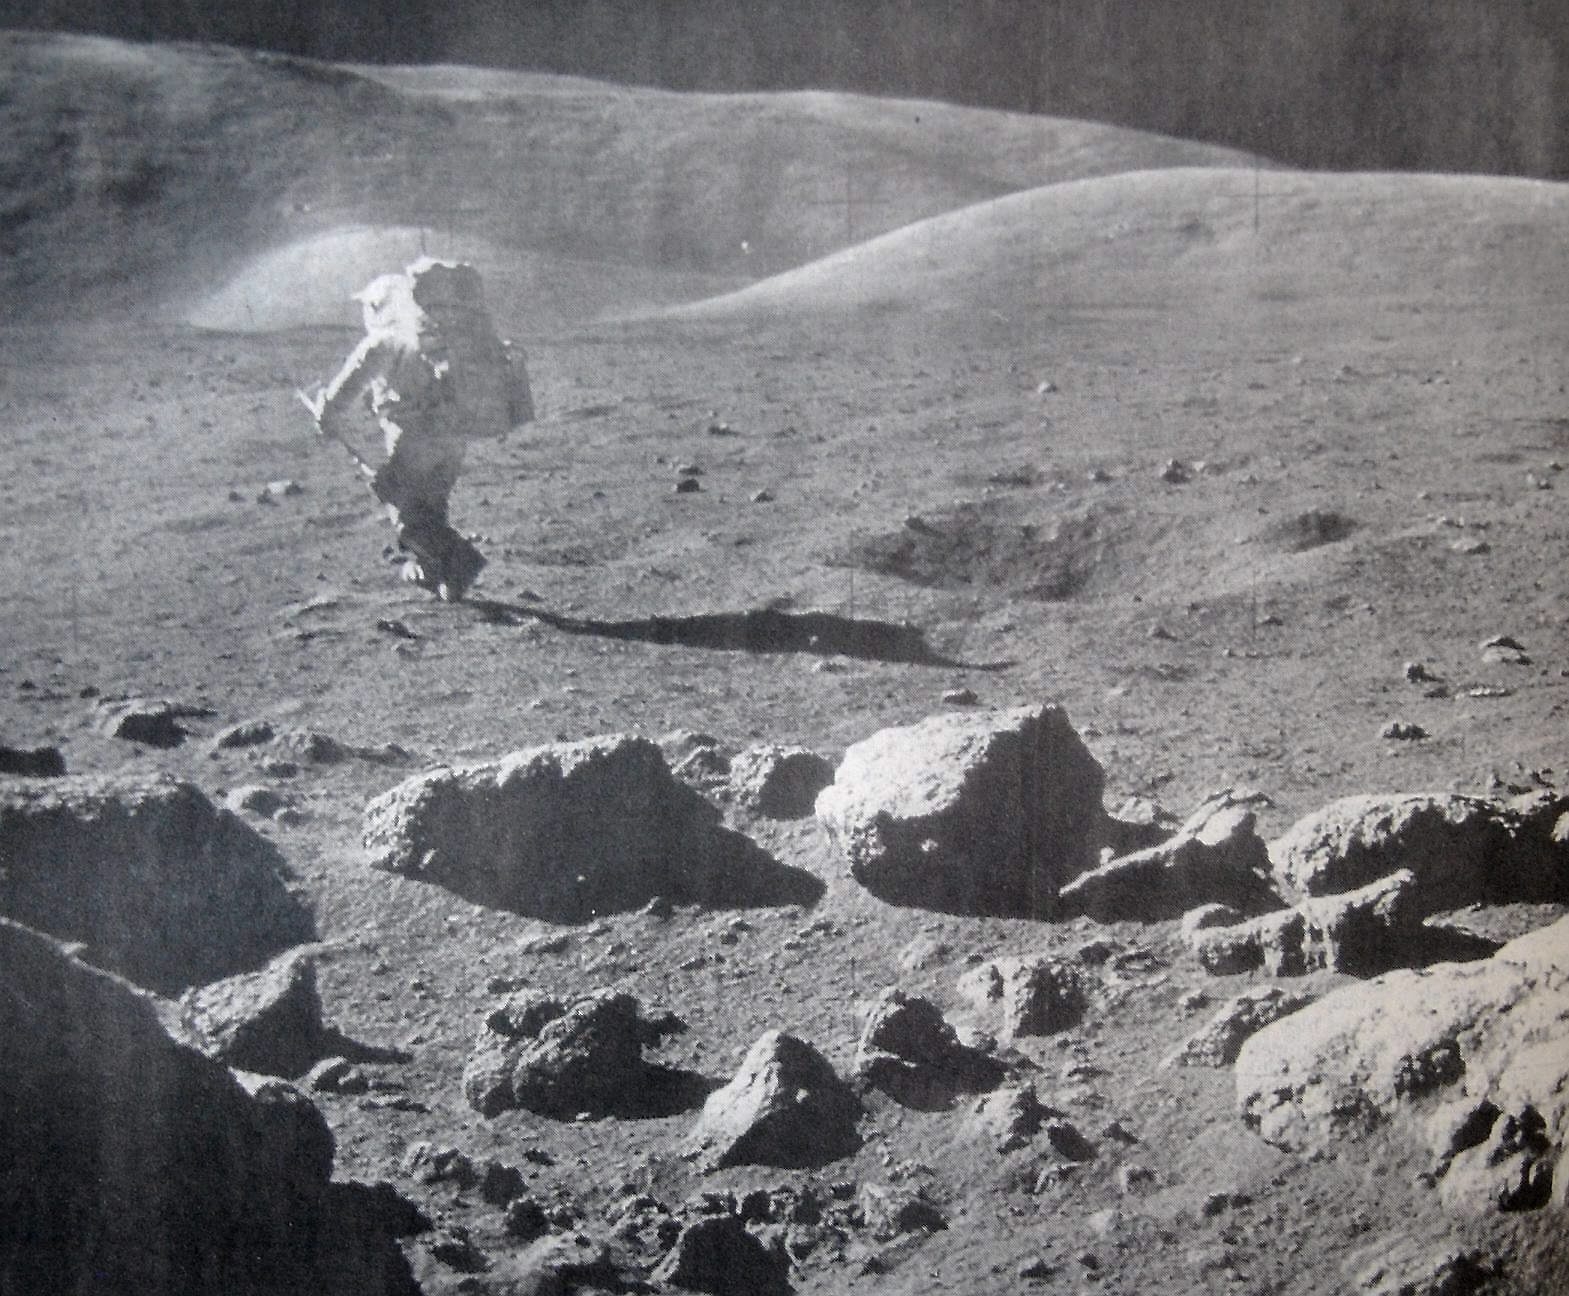 Astronauten Harrison Schmitt hoppar omkring och samlar mångrus.
Arkiv: Science photo library